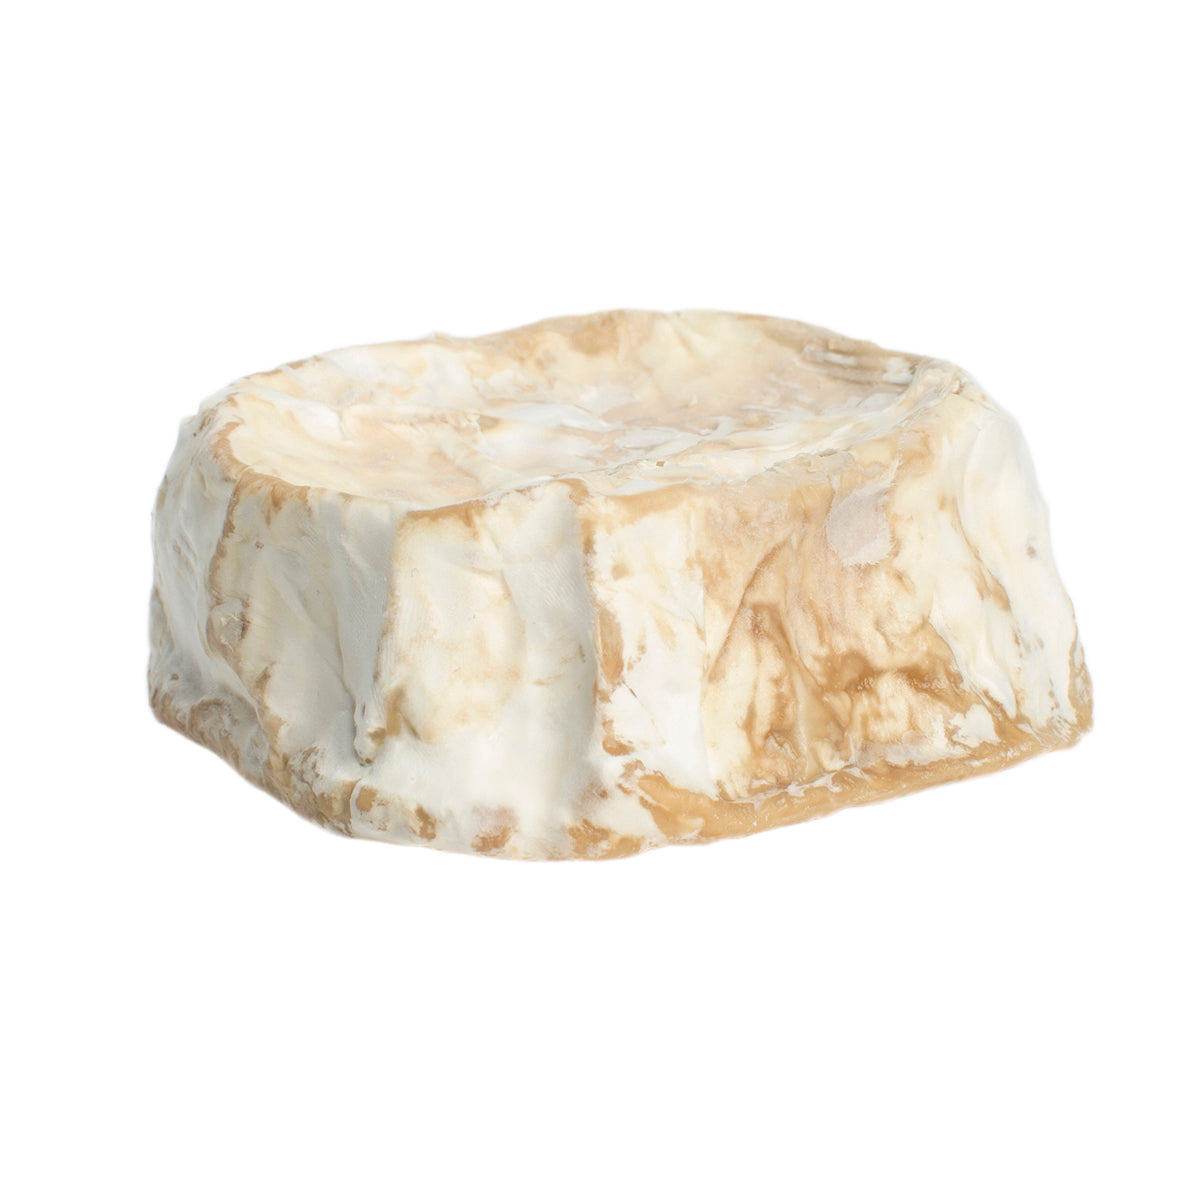 R&G Cheesemakers Goat's Milk Camembert Cheese